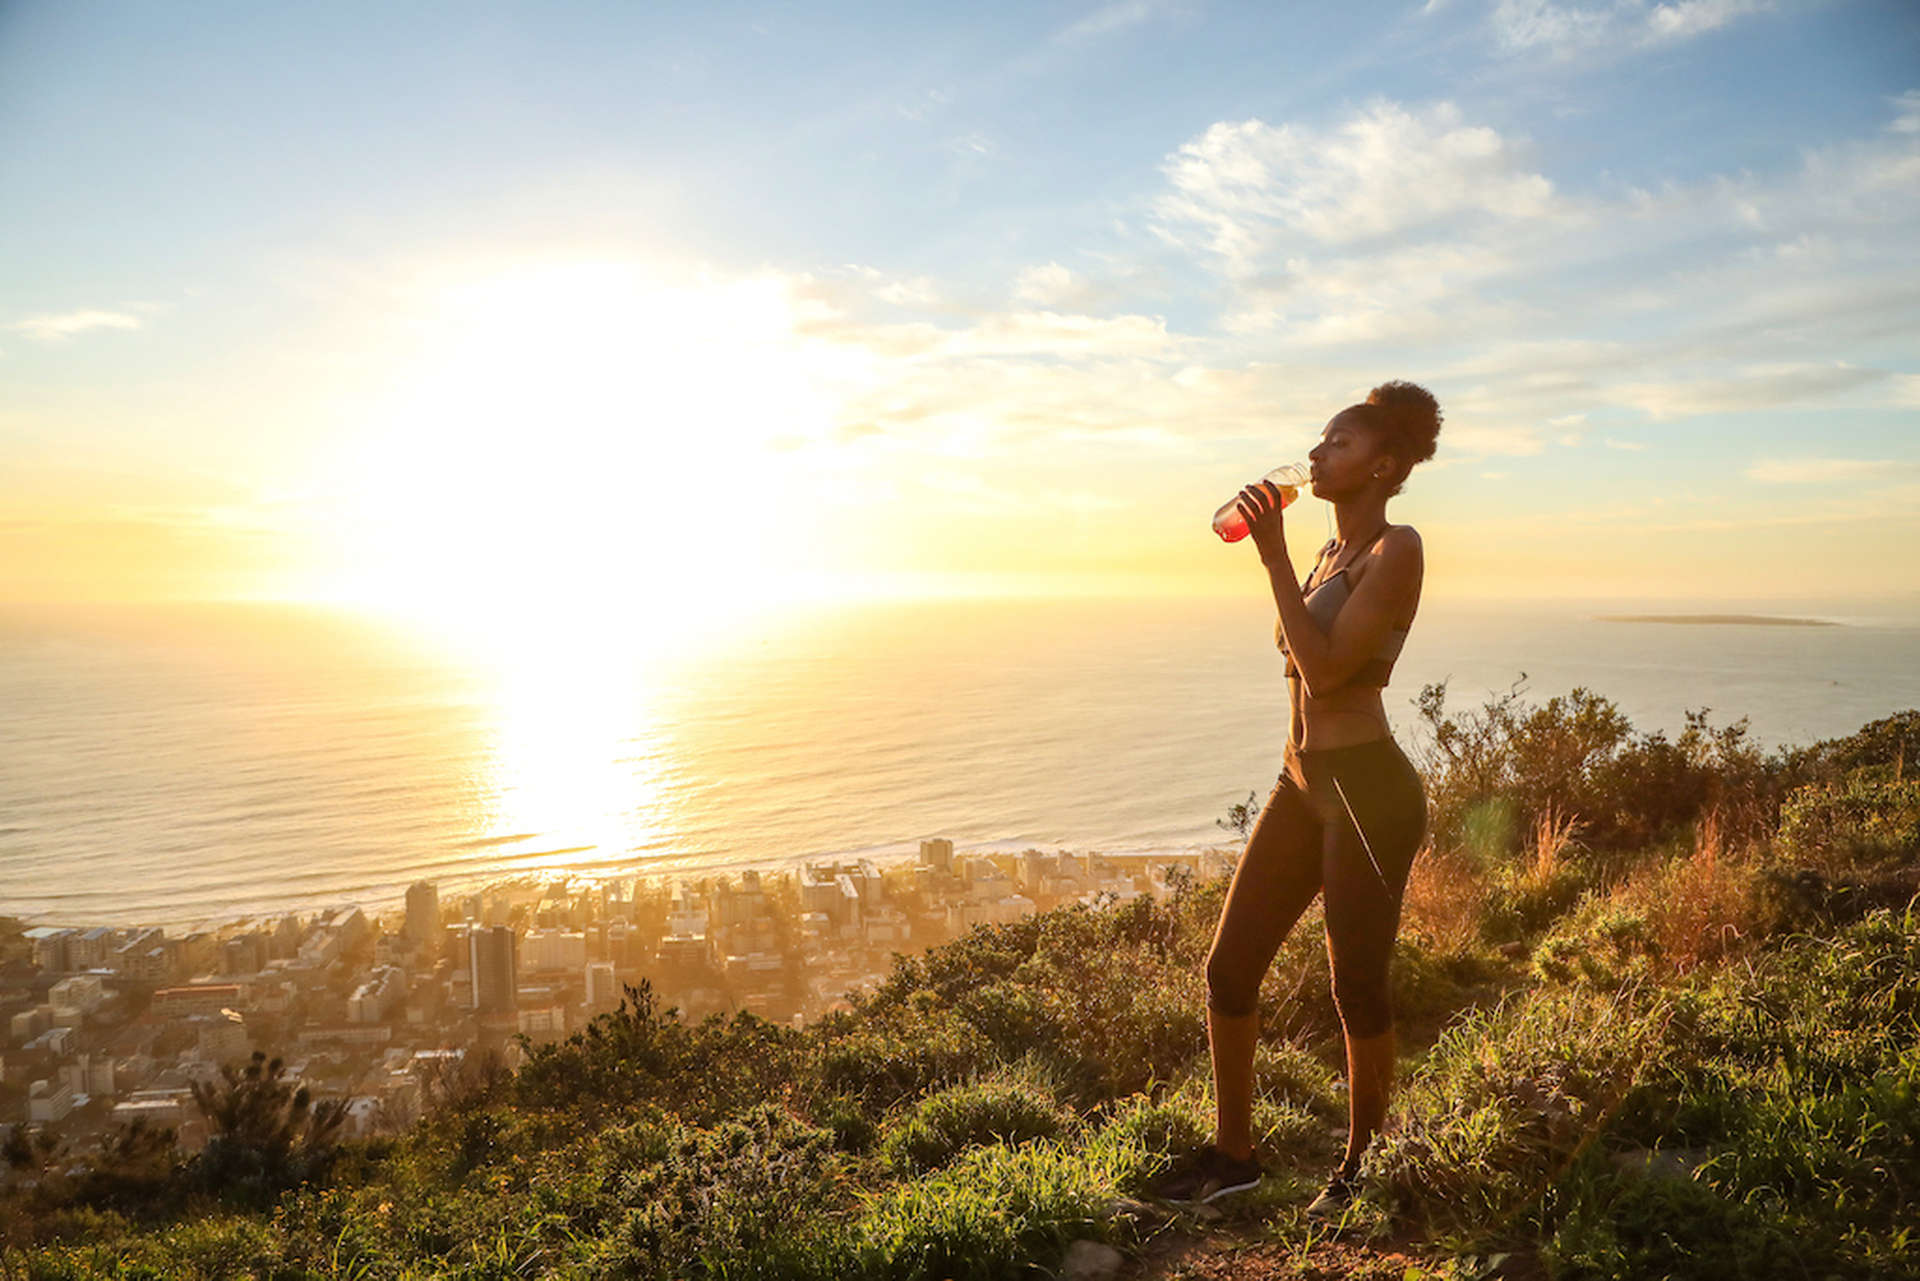 Femme faisant du jogging le long d'un sentier au sommet d'une colline surplombant la mer